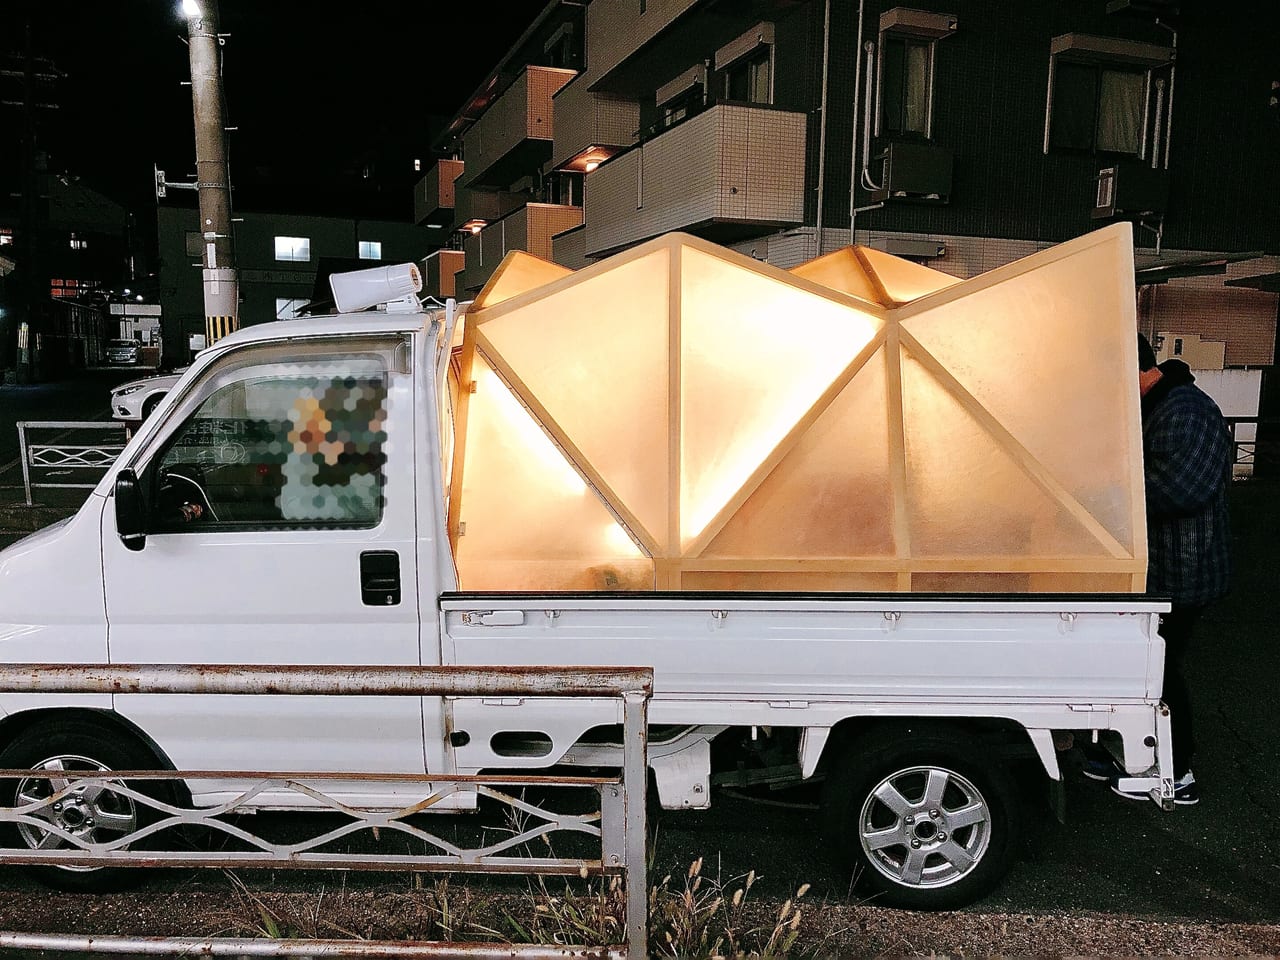 京都市伏見区 今年も 移動する竹村商店 の焼き芋の季節がやってきた しかも車がヴァージョンアップしていた 号外net 伏見区